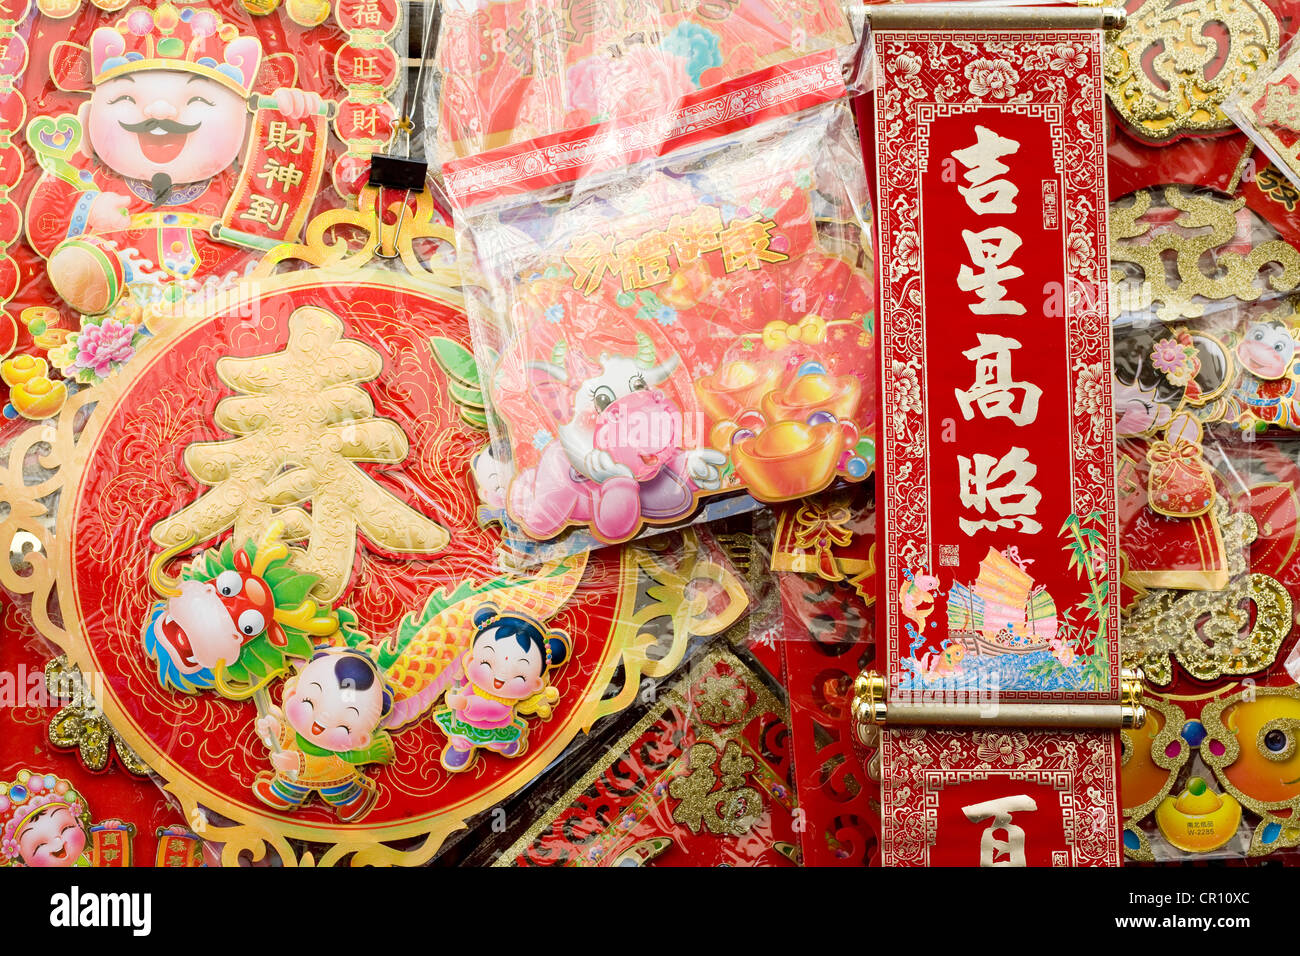 Cina, Hong Kong, mercato, vendita di decorazioni per l'anno nuovo cinese Foto Stock